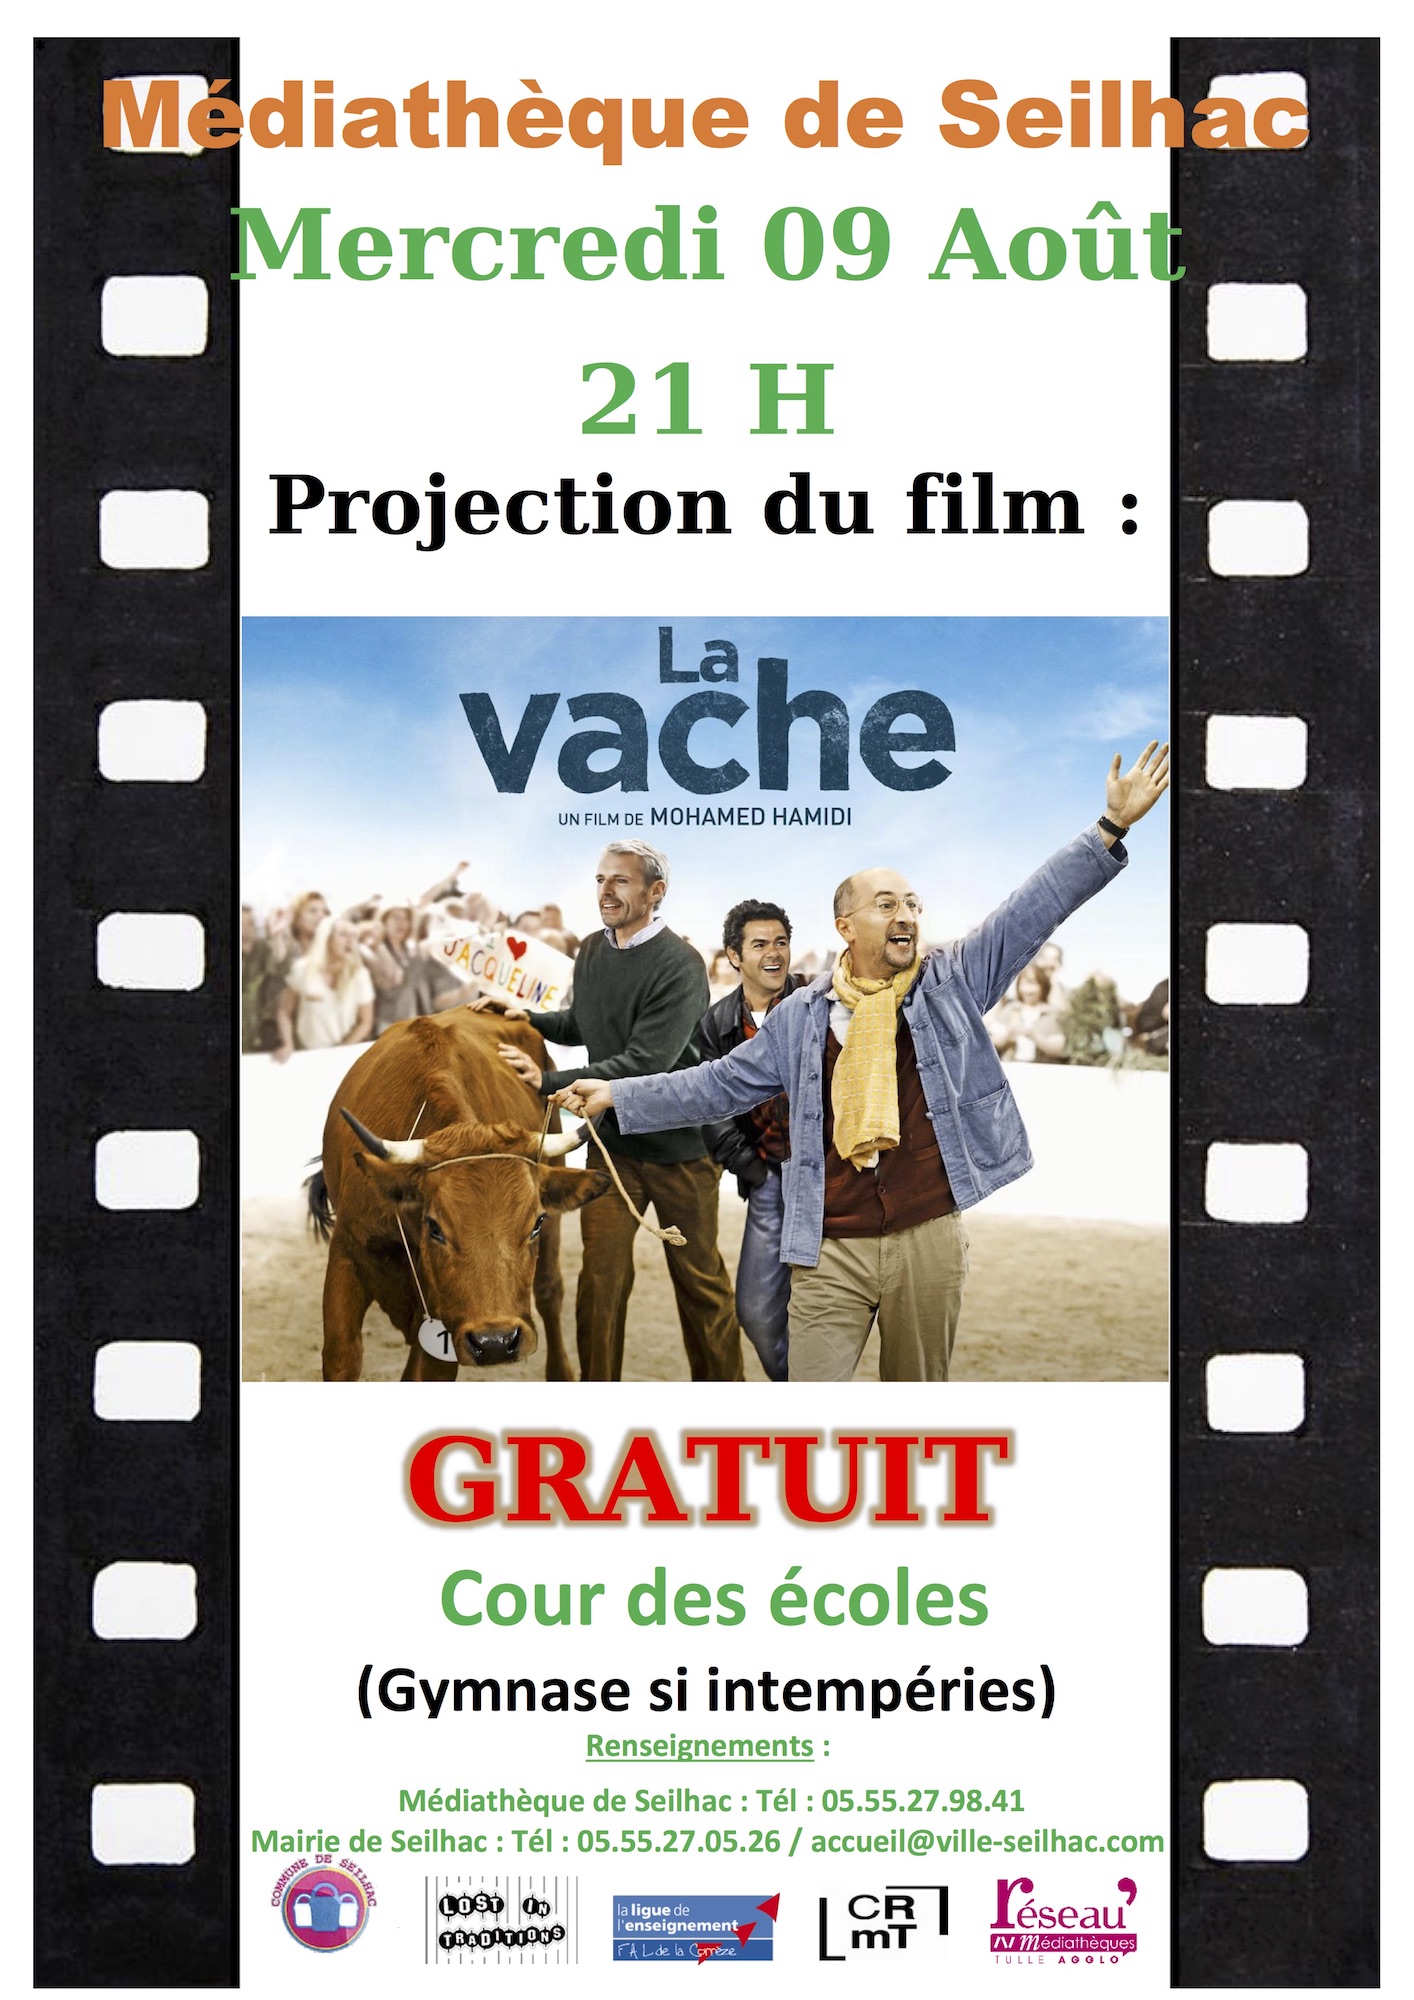 Projection du film “La vache”